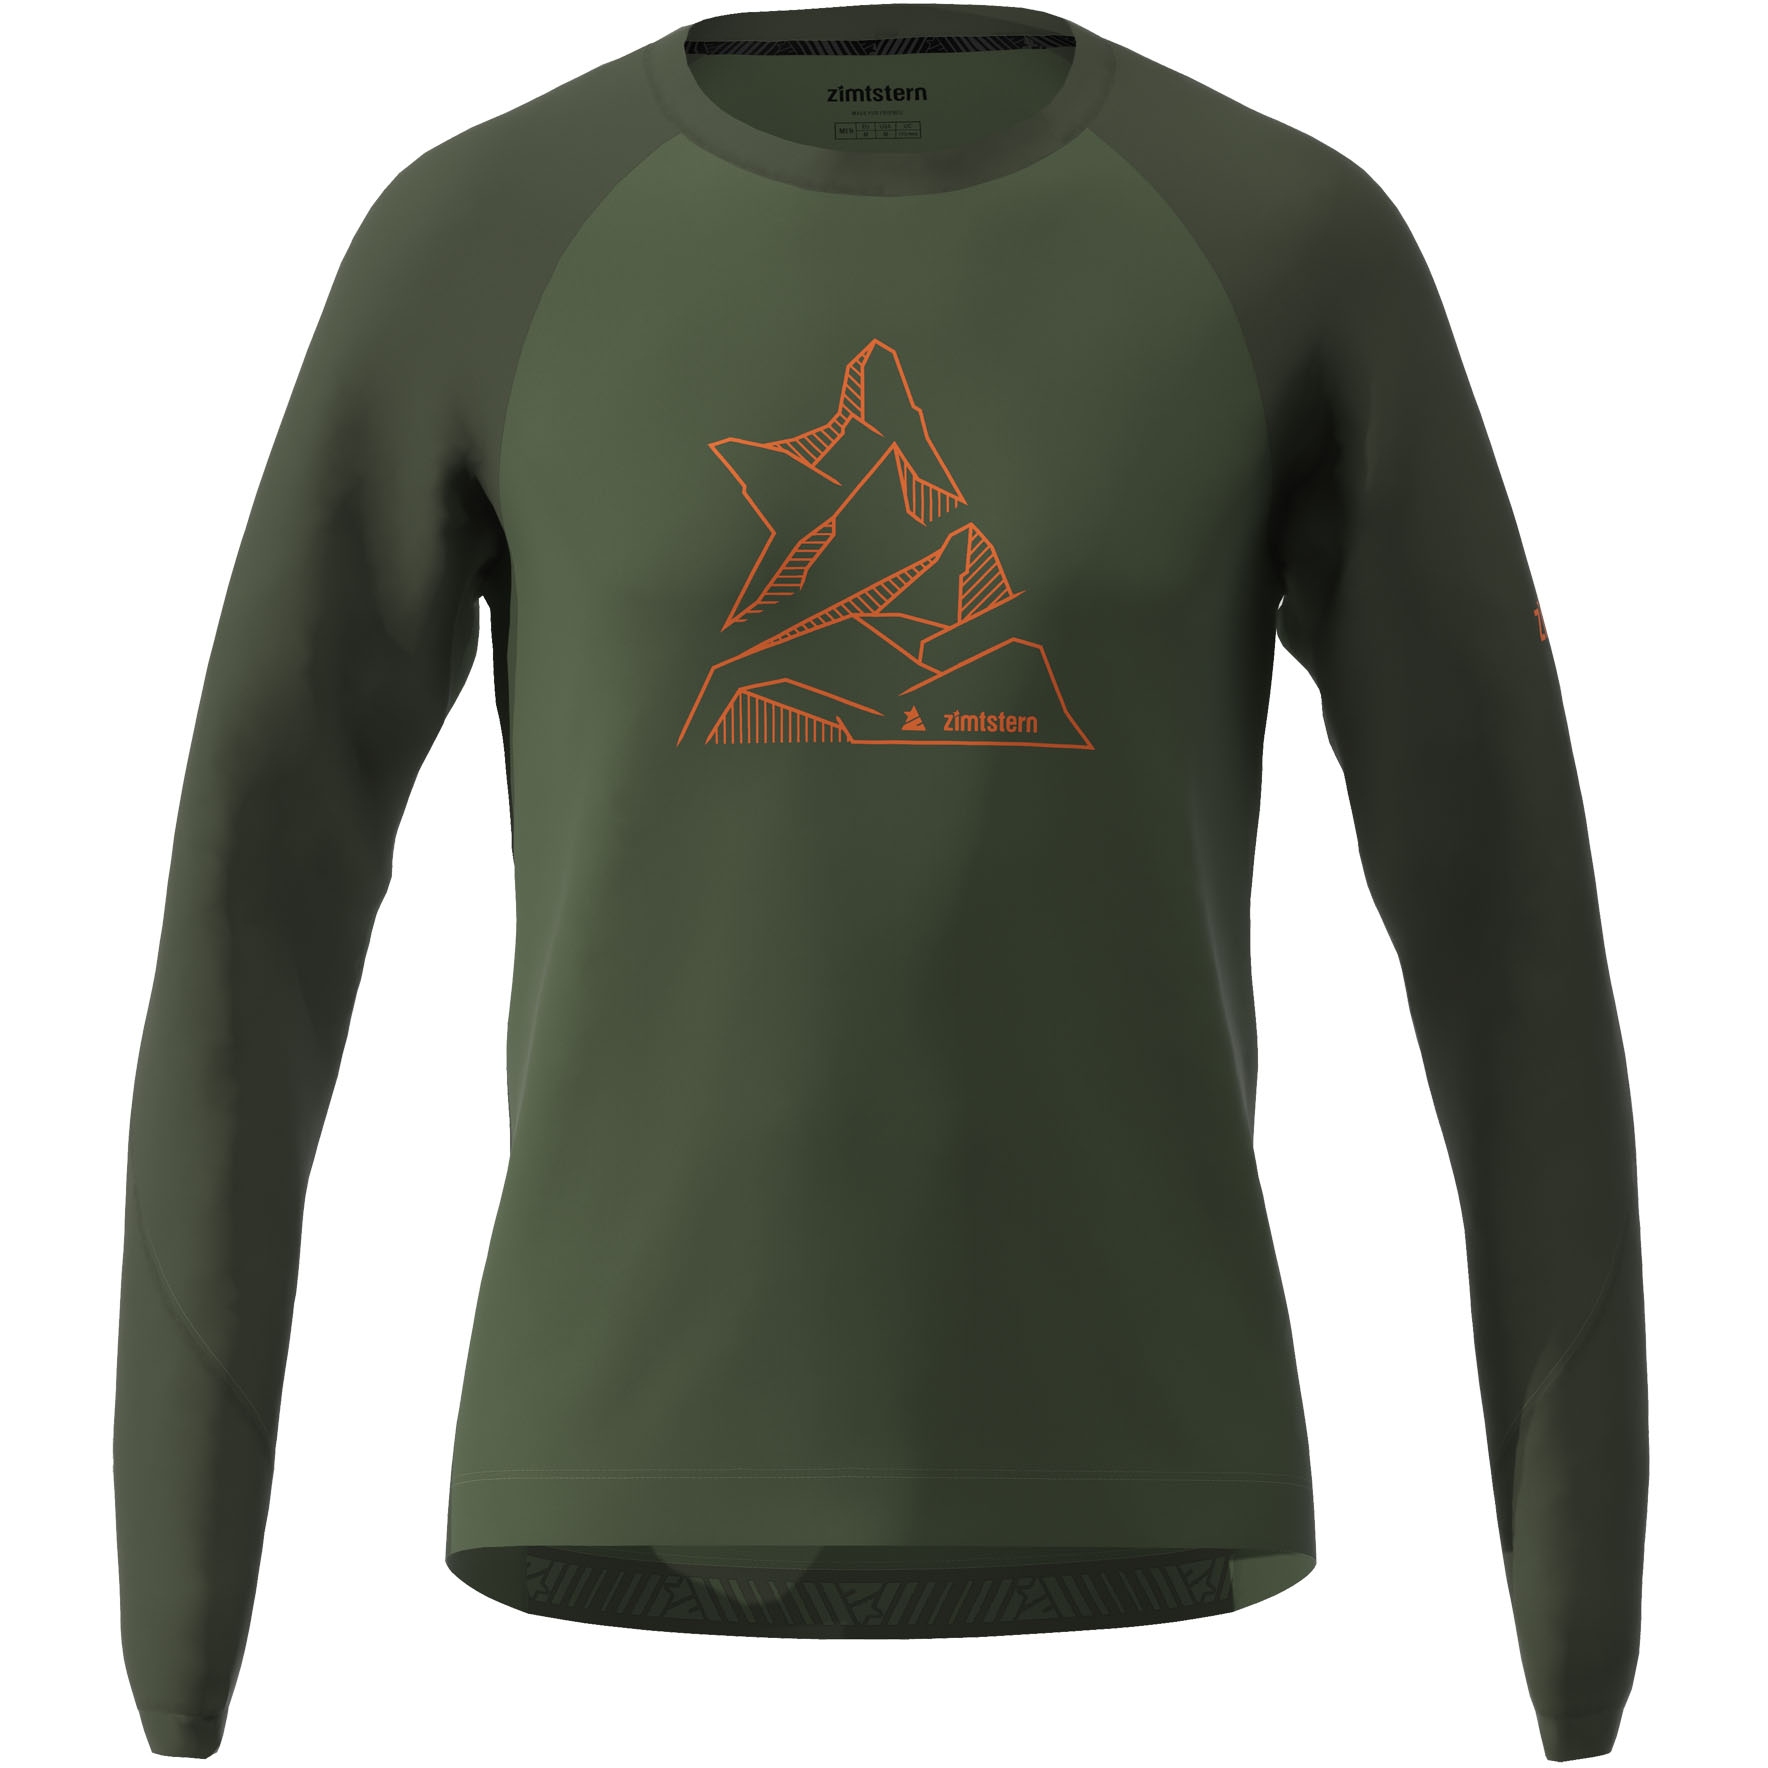 Produktbild von Zimtstern PureFlowz Langarm-Shirt M10033 - bronze green/forest night